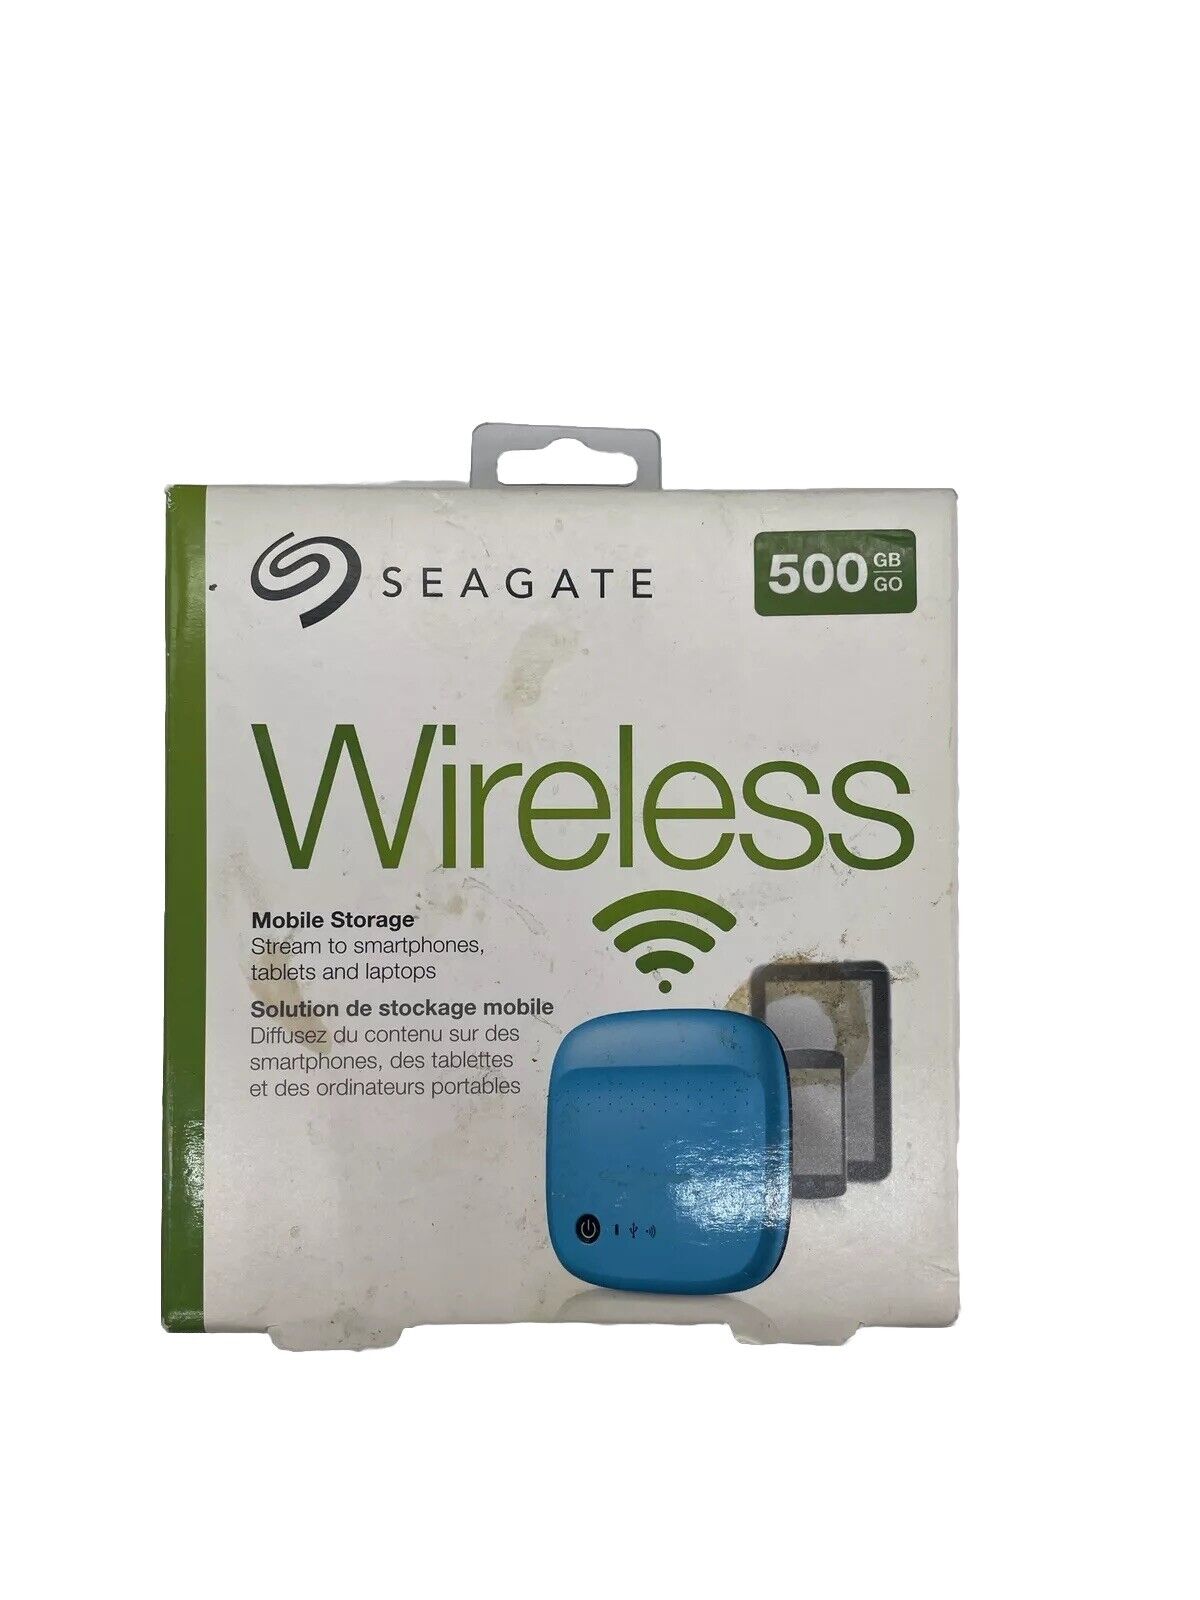 SEAGATE 500 GB WIRELESS MOBILE STORAGE STDC500400 